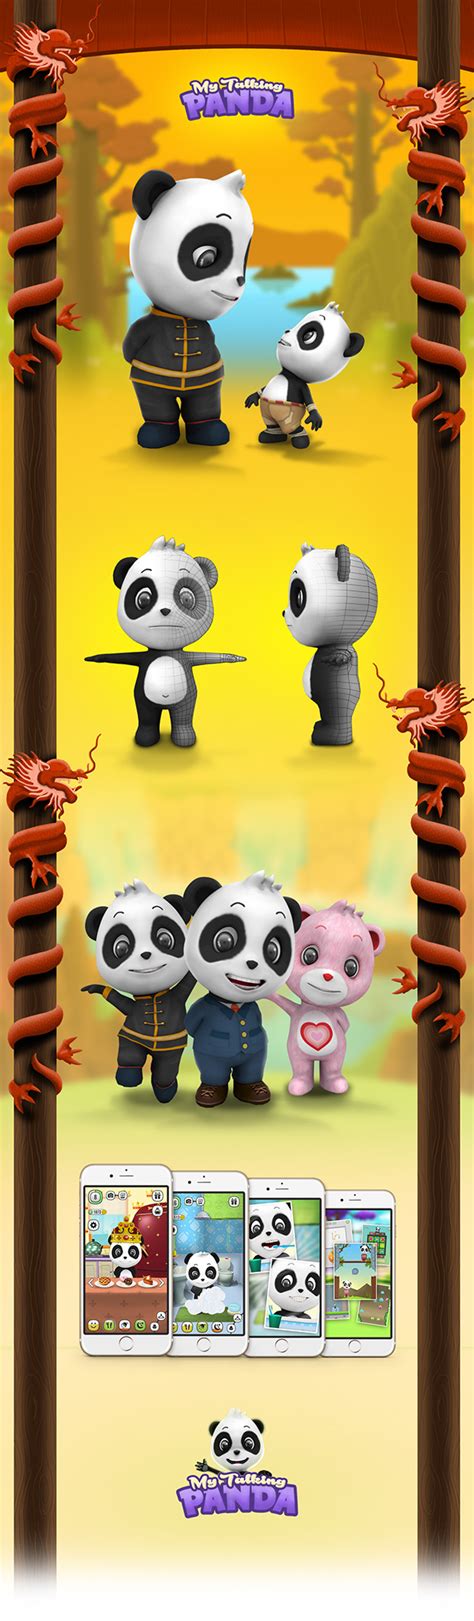 My Talking Panda Virtual Pet Game On Behance